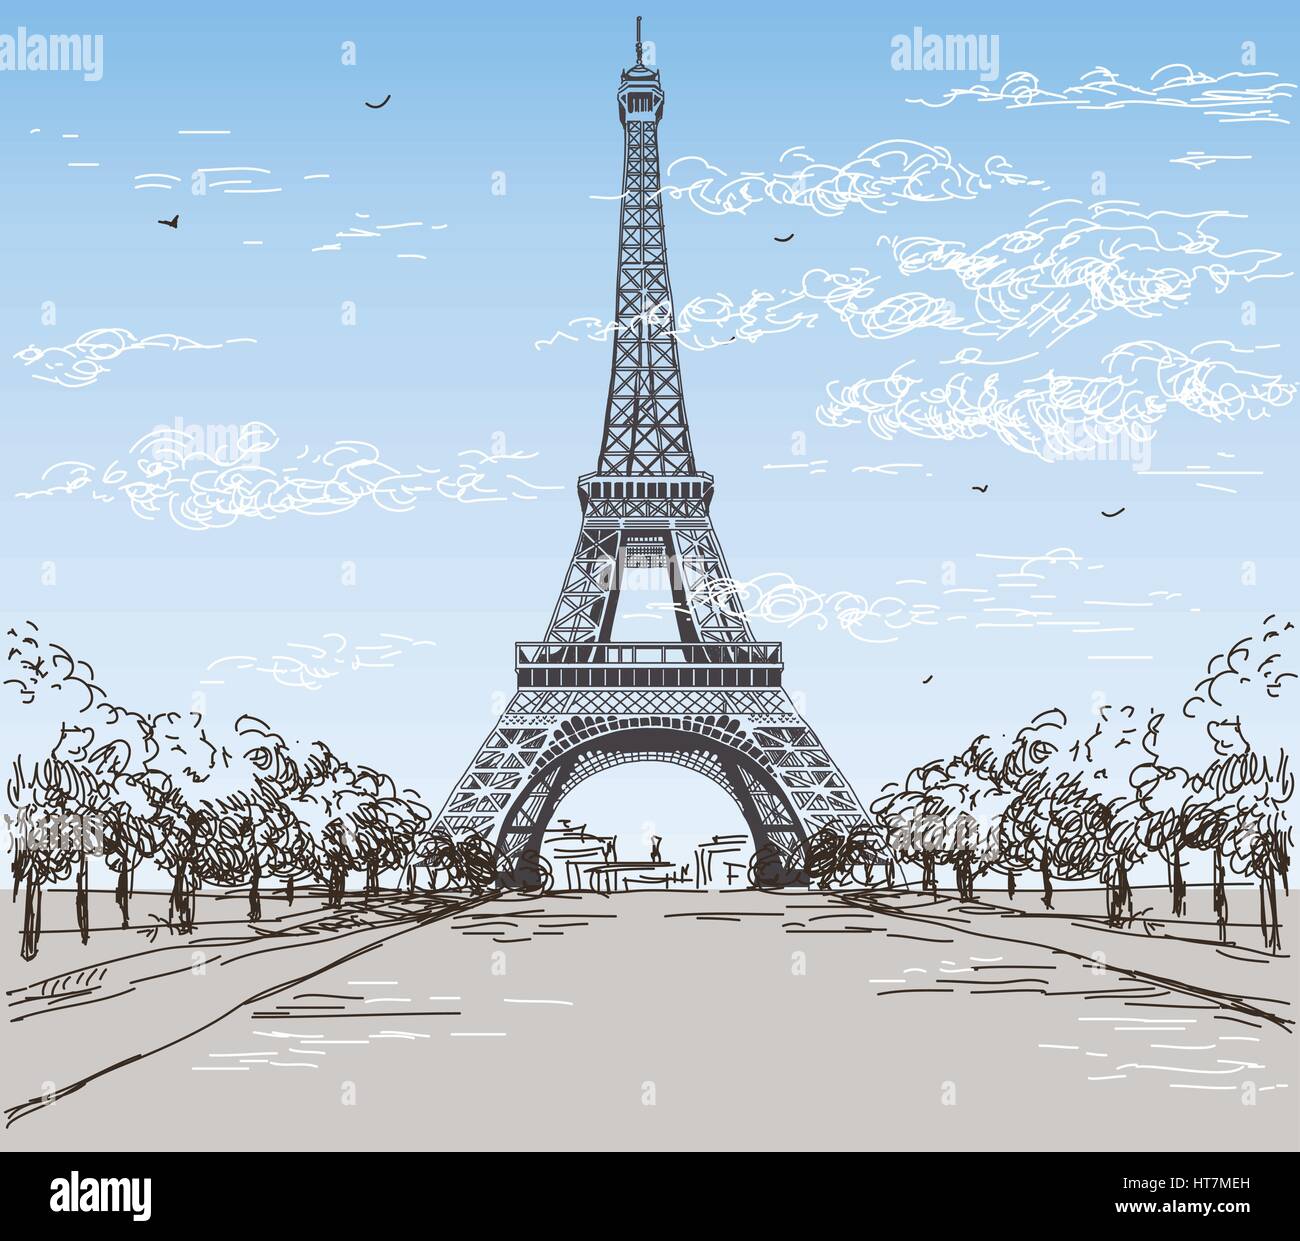 Paysage avec la tour Eiffel en noir et blanc sur fond gris vector dessin illustration Illustration de Vecteur